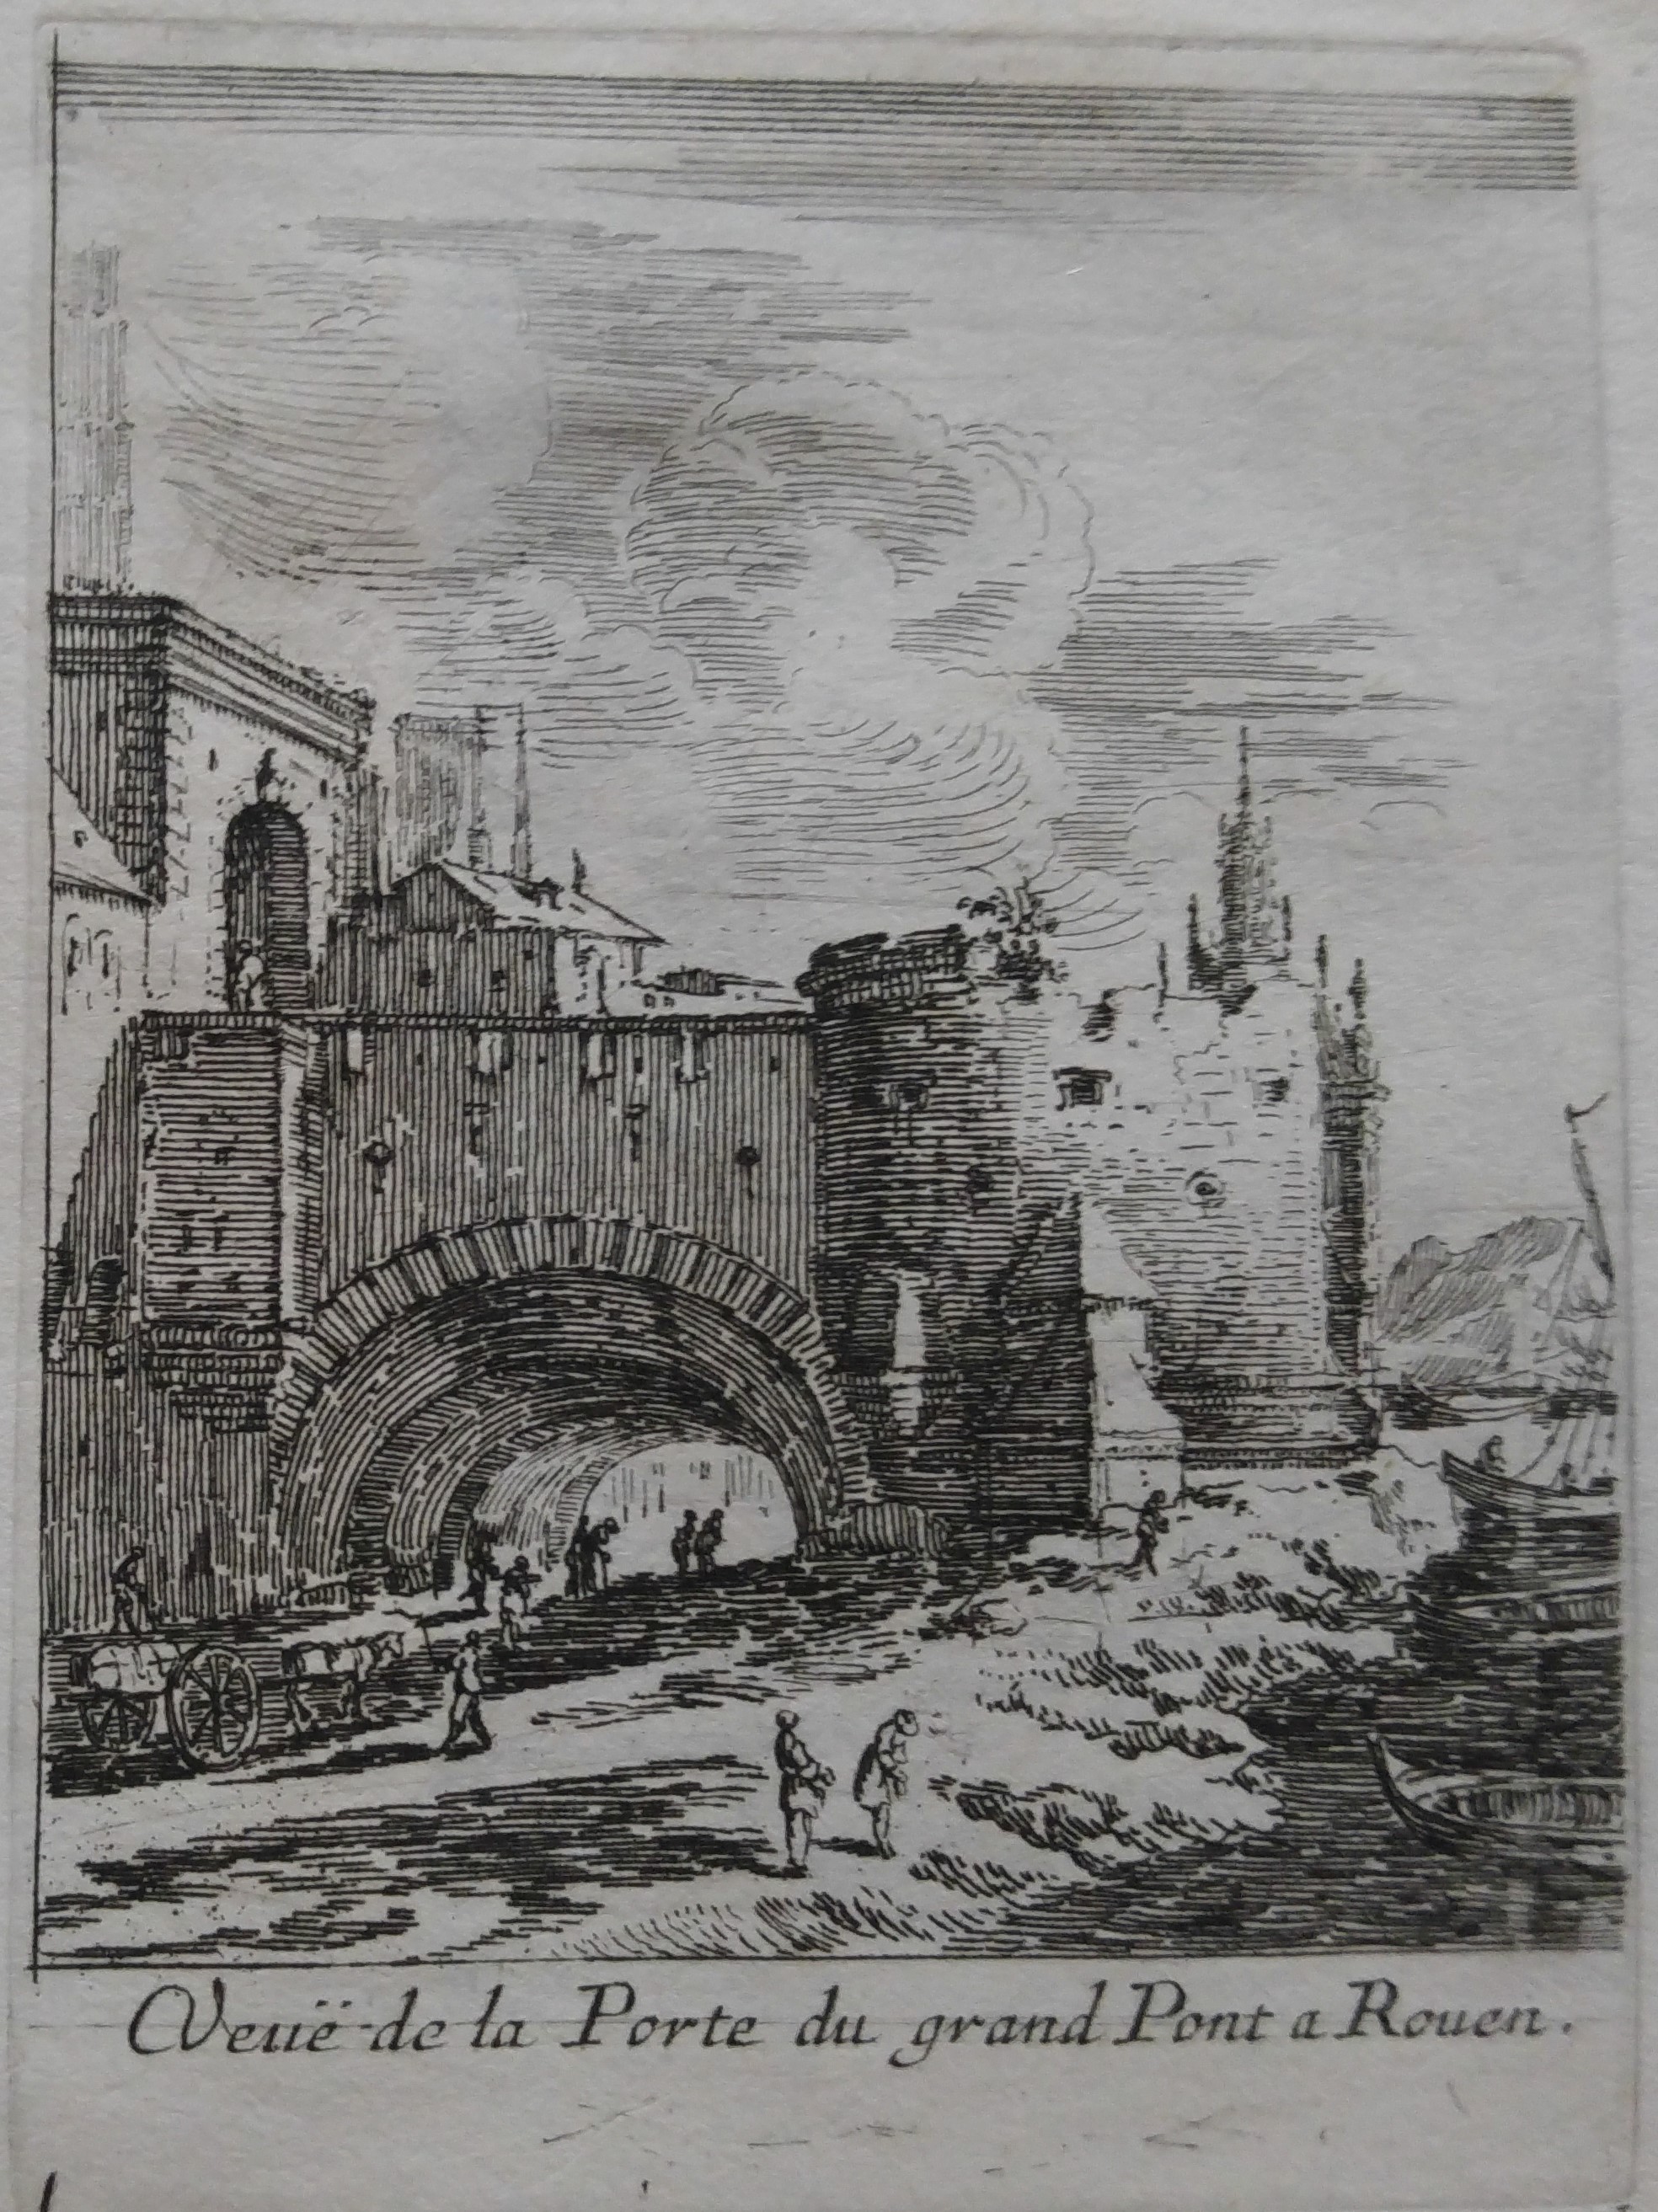 Israël Silvestre : Veuë de la Porte du grand Pont a Rouen.